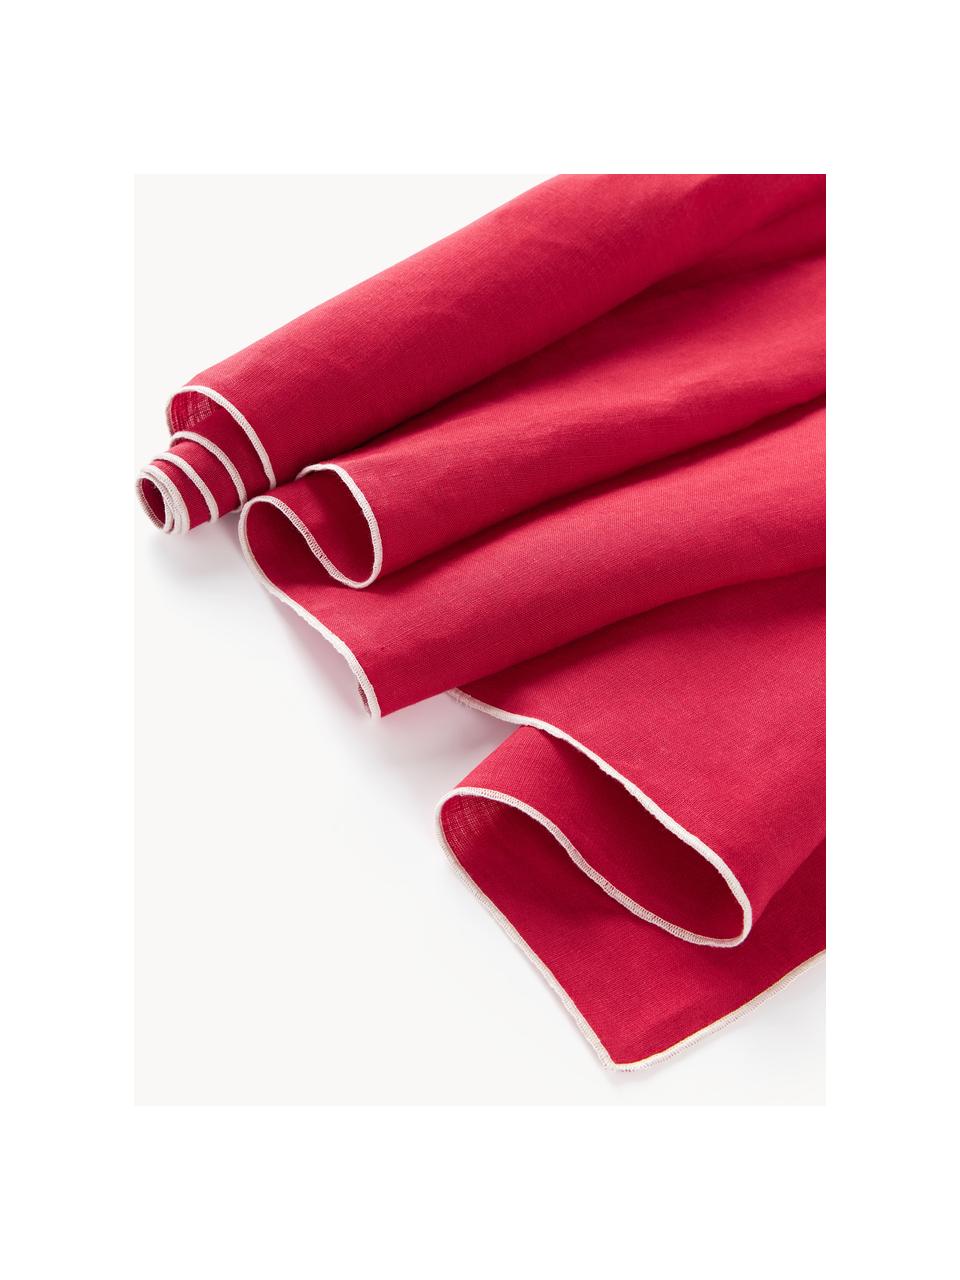 Leinen-Tischläufer Kennedy mit Umkettelung, 100 % gewaschenes Leinen

Leinen ist eine Naturfaser, welche sich durch Atmungsaktivität, Strapazierfähigkeit und Weichheit auszeichnet.

Das in diesem Produkt verwendete Material ist schadstoffgeprüft und zertifiziert nach STANDARD 100 by OEKO-TEX®, 6760CIT, CITEVE., Rot, Weiss, B 40 x L 150 cm